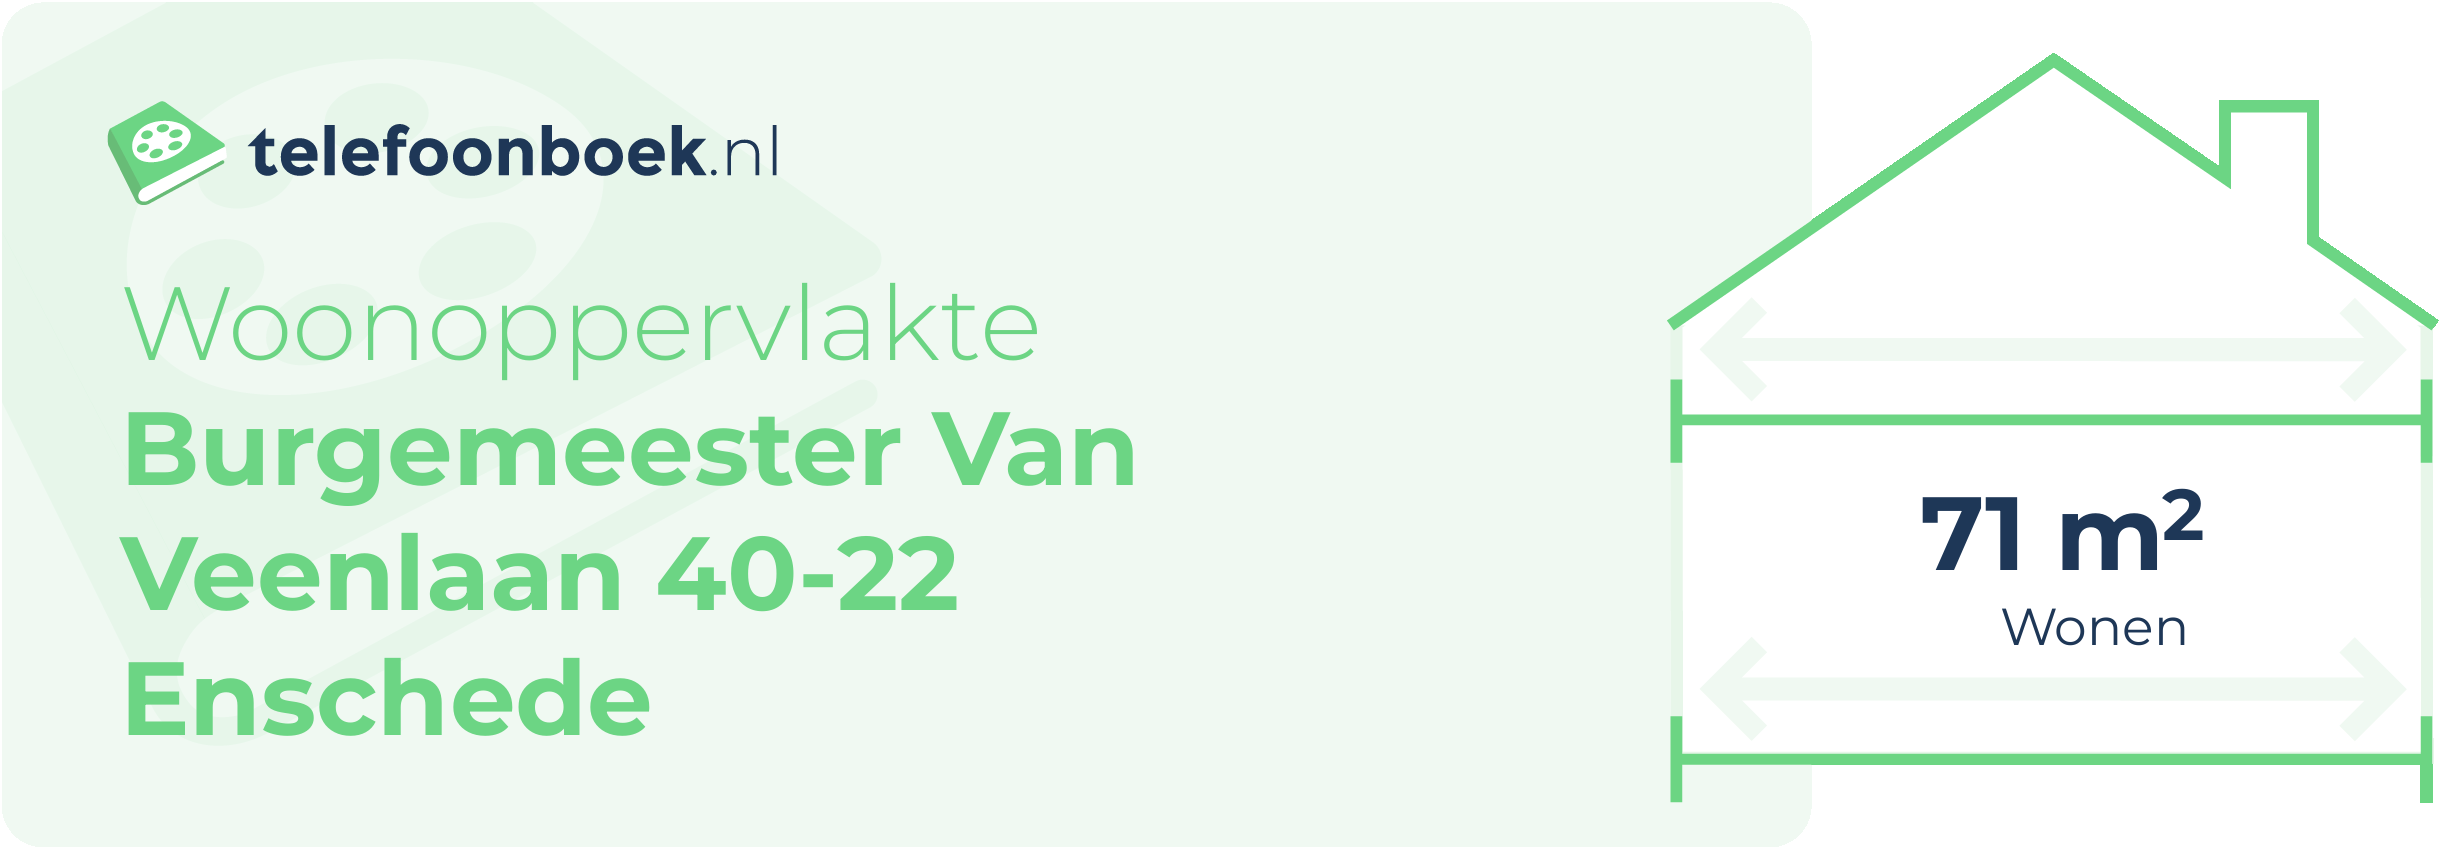 Woonoppervlakte Burgemeester Van Veenlaan 40-22 Enschede